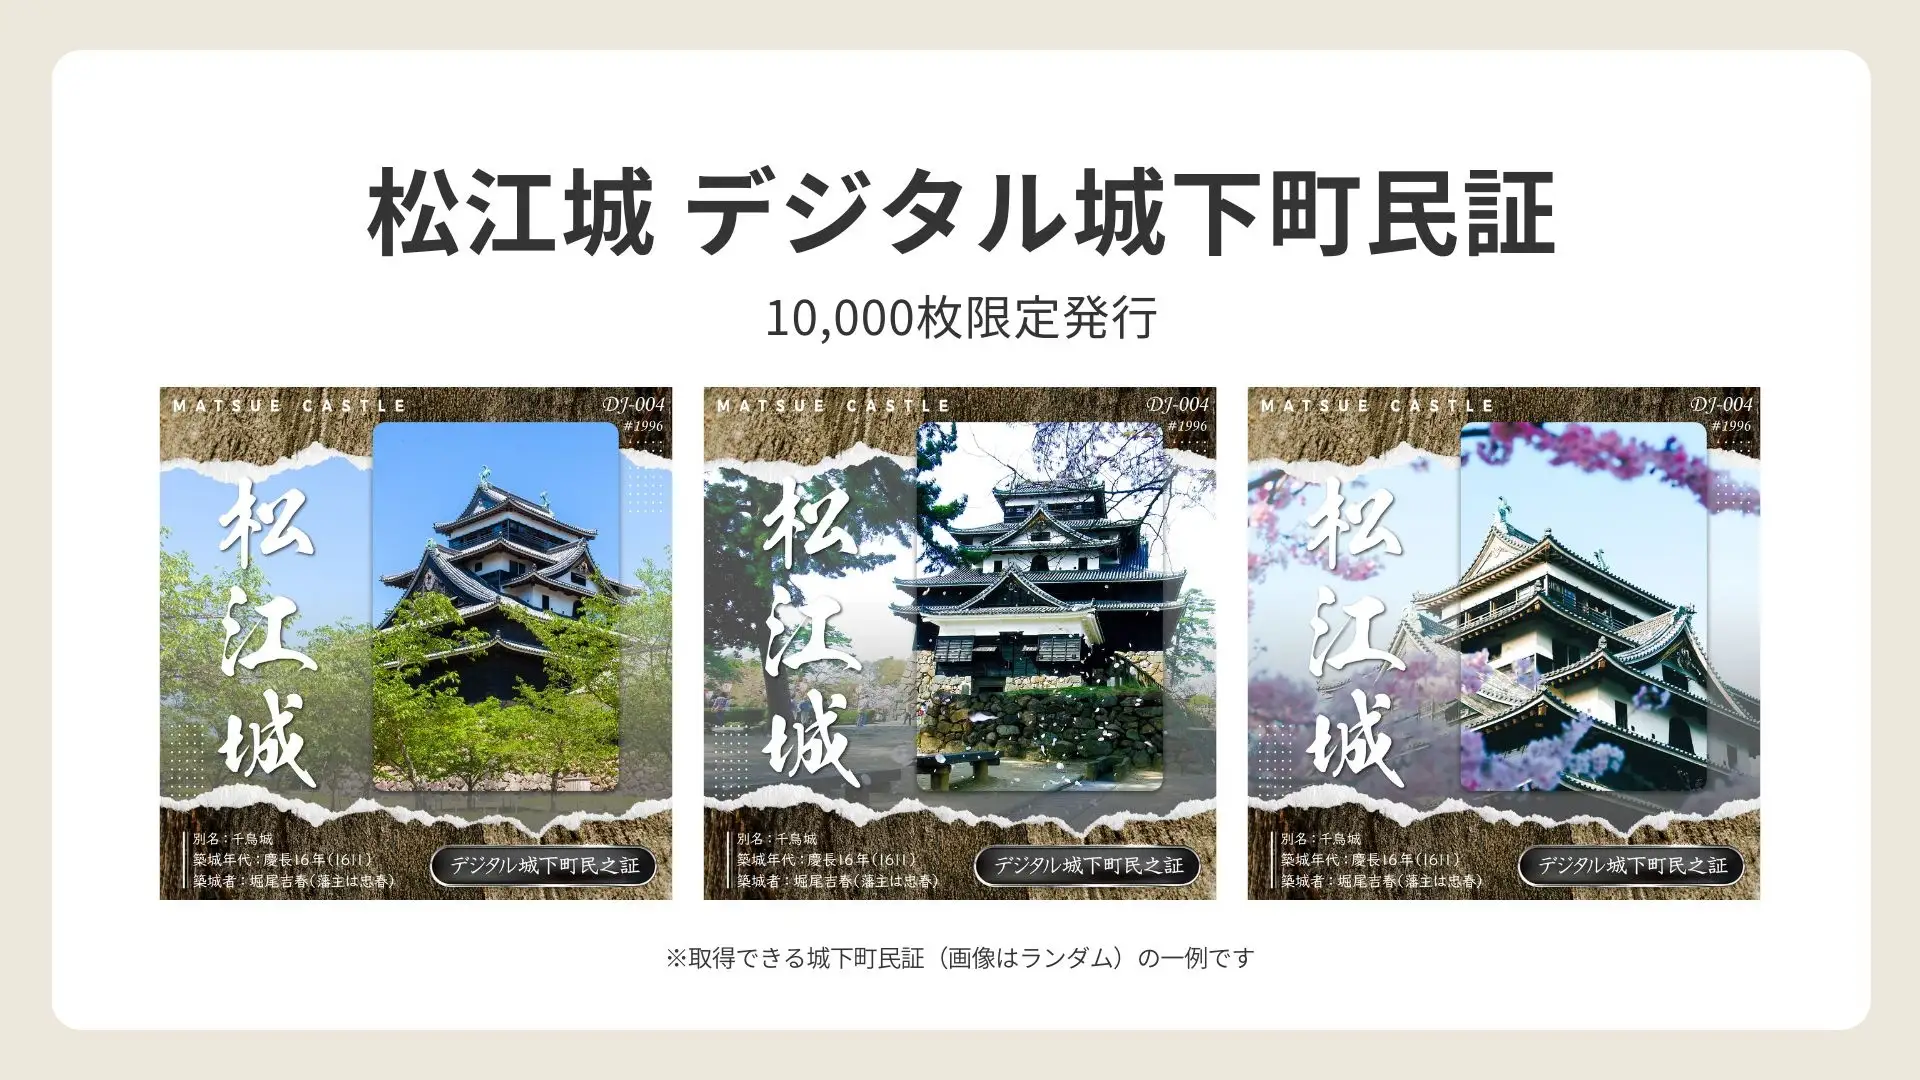 松江城を起点とする地域活性化プロジェクト